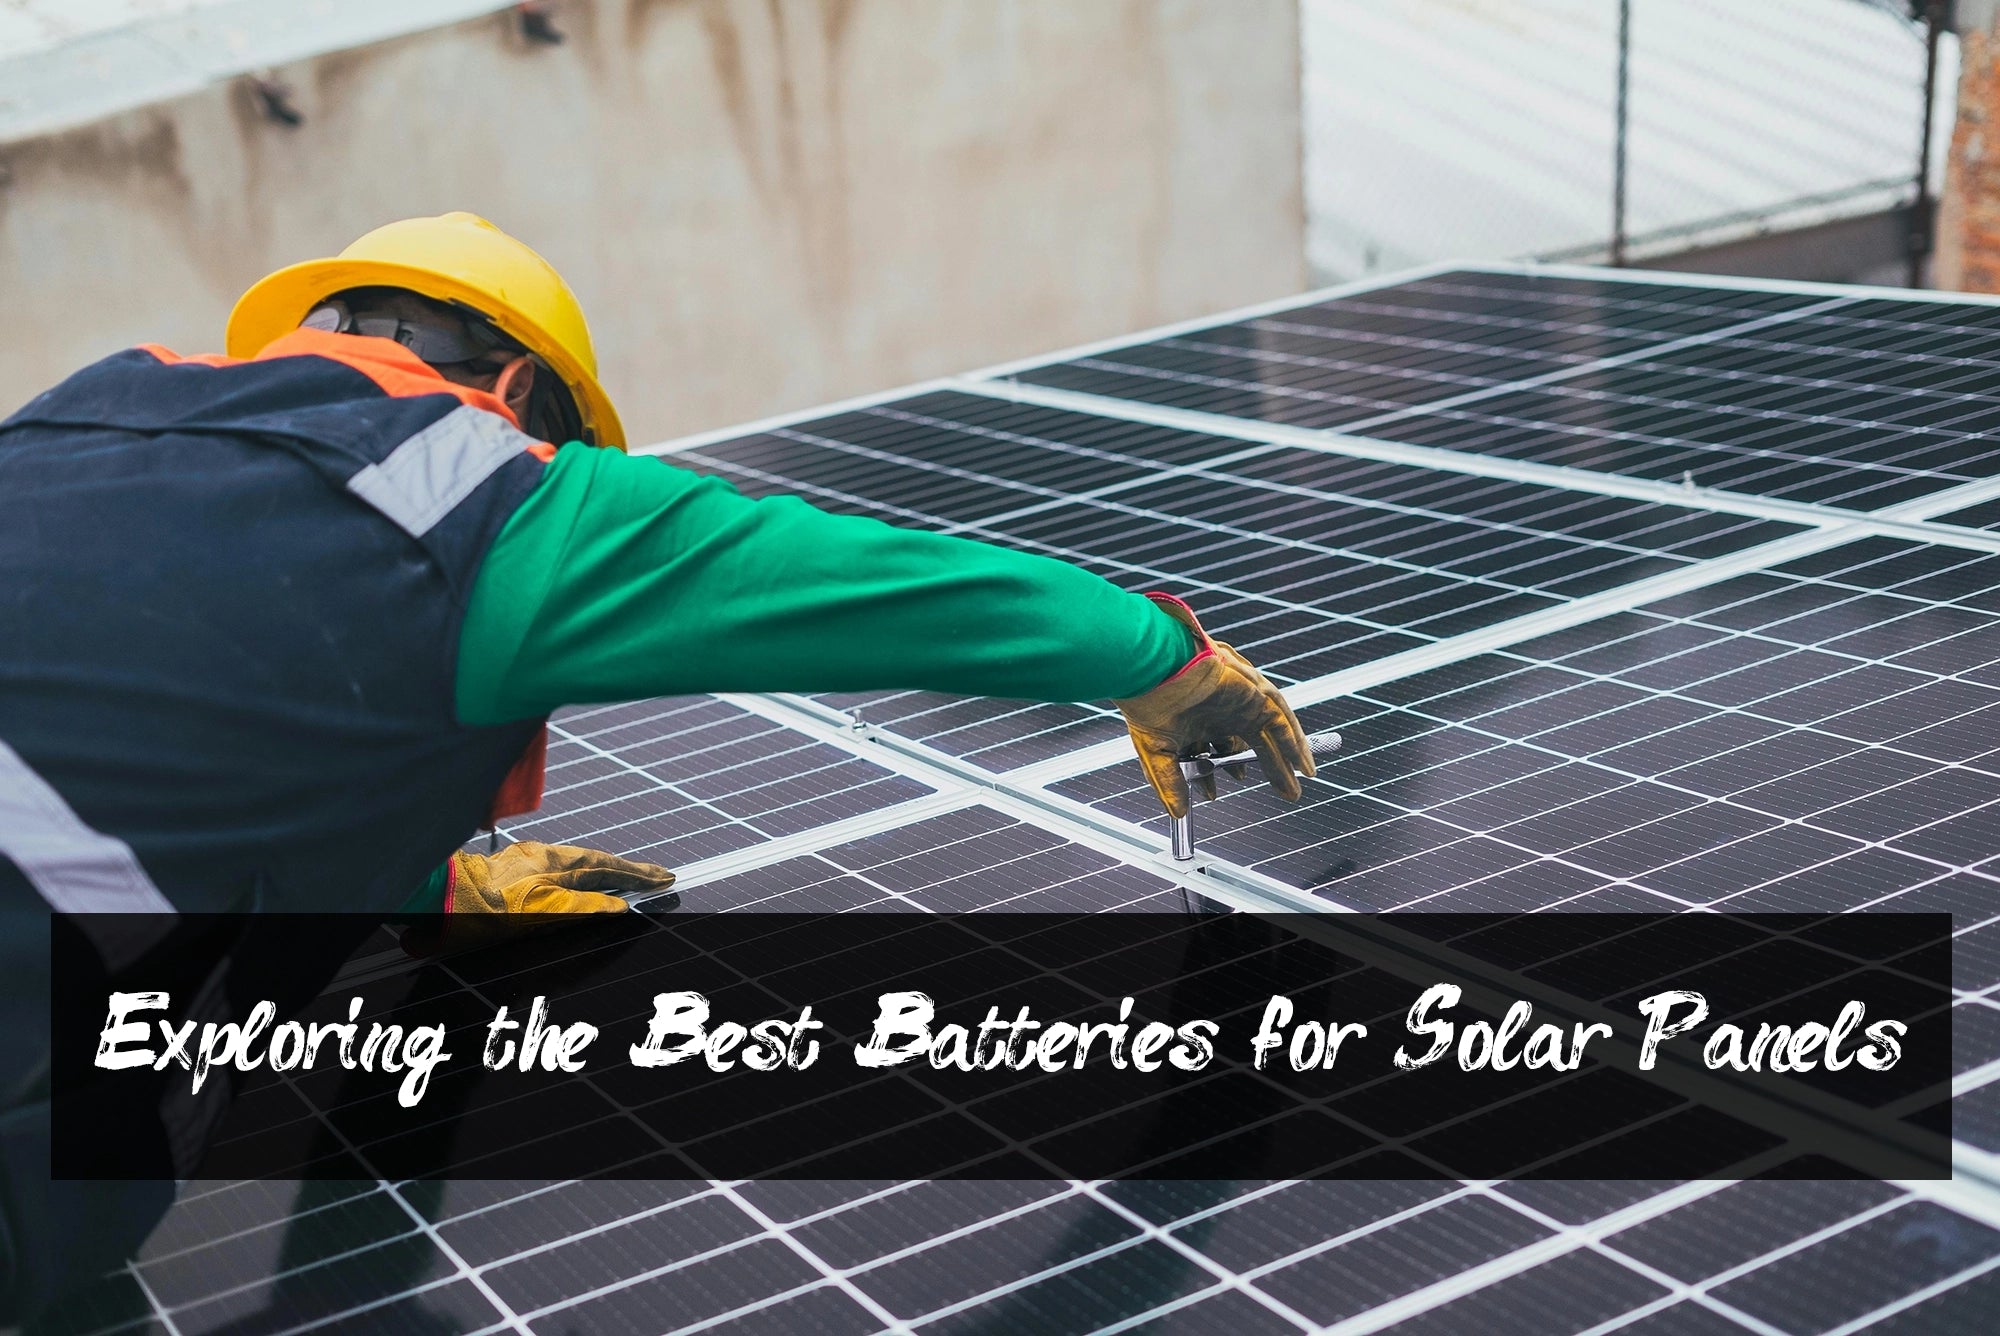 Batteries for Solar Panels